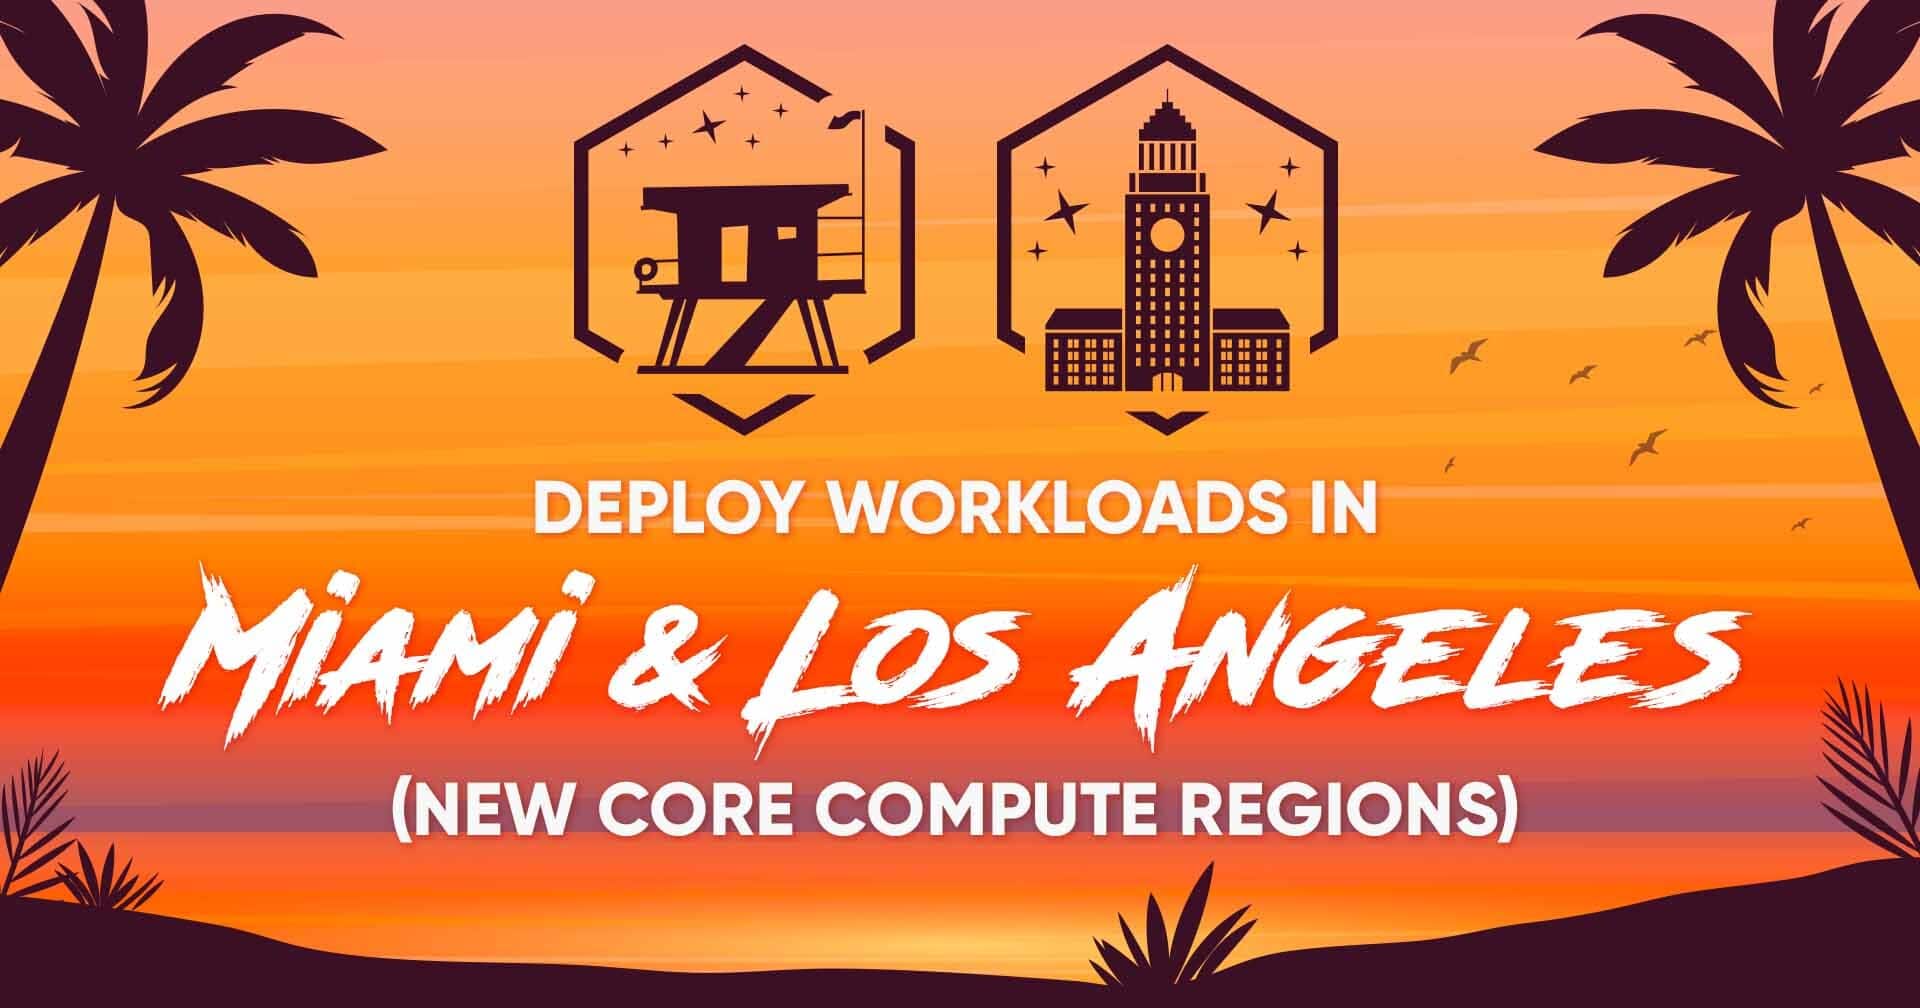 Despliegue cargas de trabajo en Miami y Los Ángeles con las nuevas regiones de Core Compute.